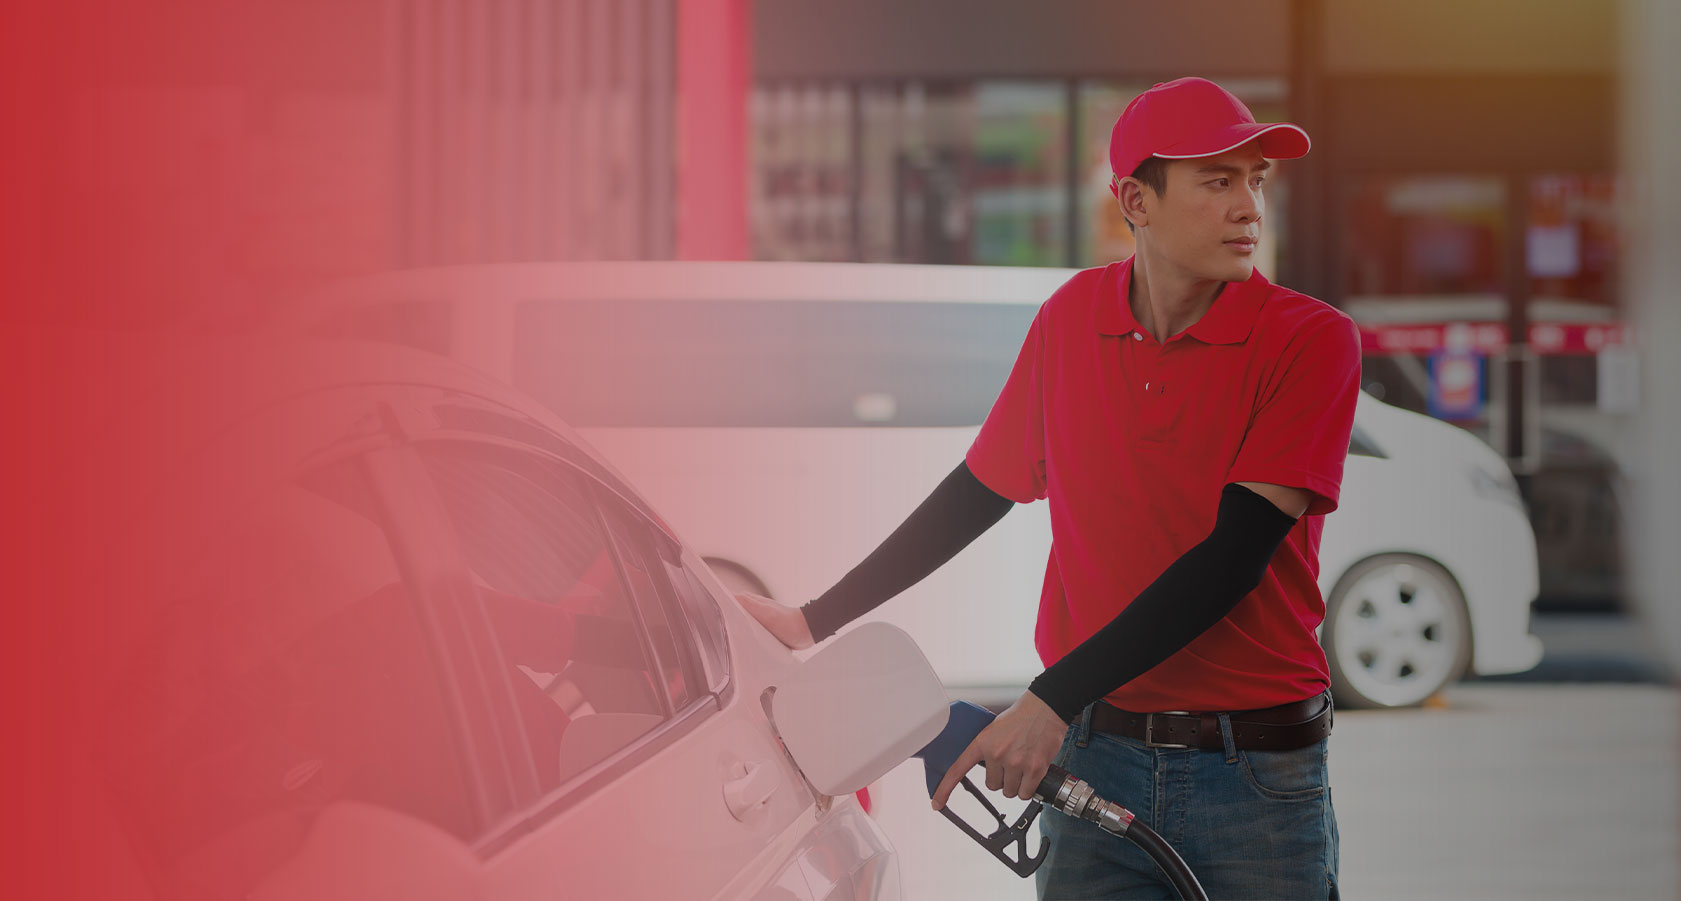 banner, fondo rojo, una persona llenando el tanque de gasolina